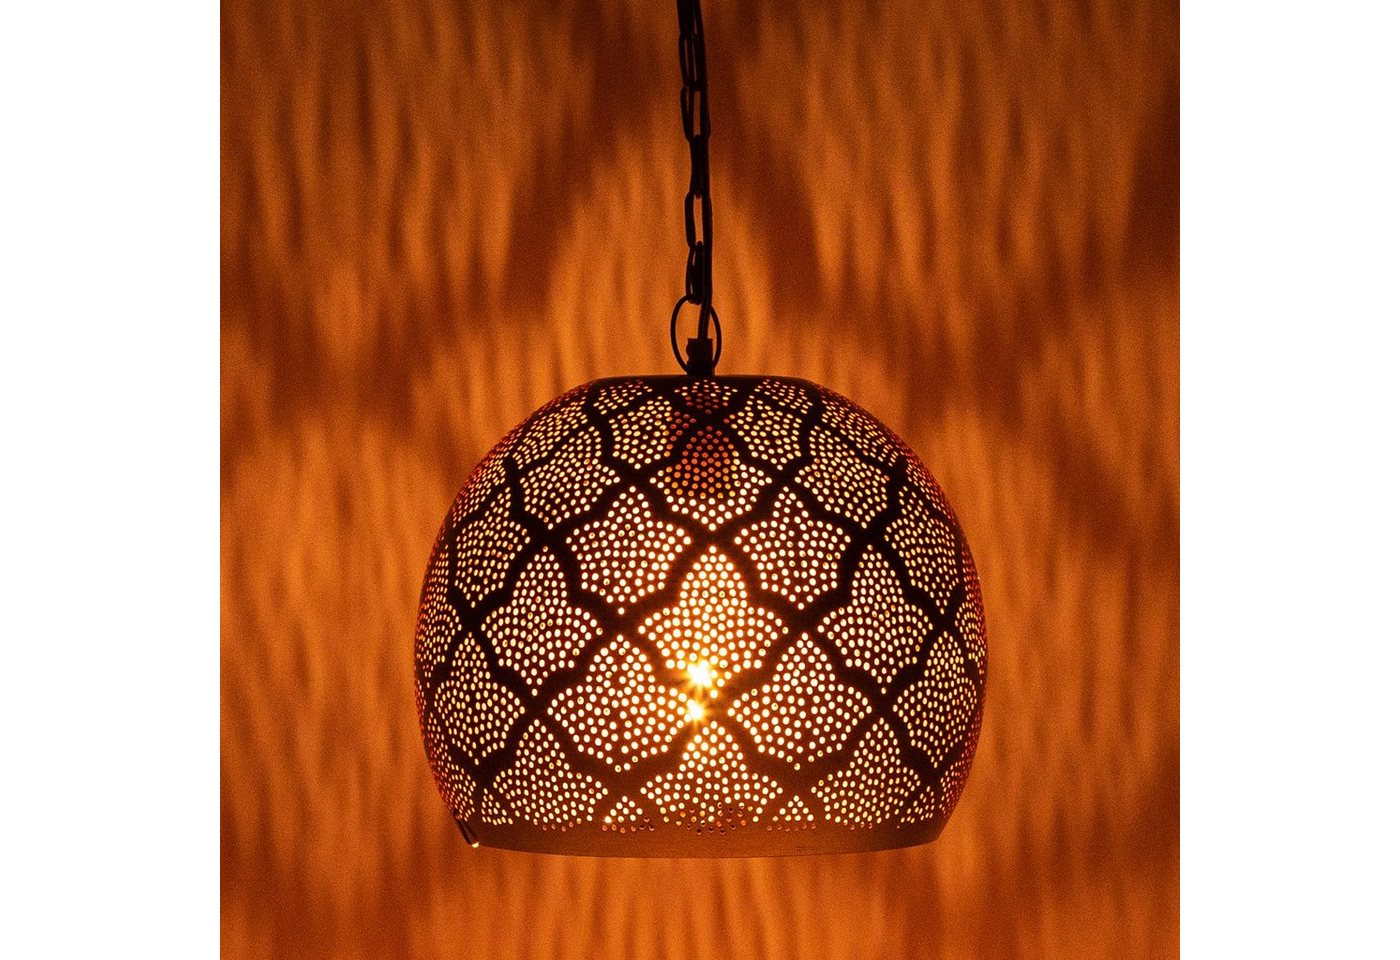 Marrakesch Orient & Mediterran Interior Deckenleuchte MAADES Orientalische Lampe Pendelleuchte Rayhana 30cm von Marrakesch Orient & Mediterran Interior